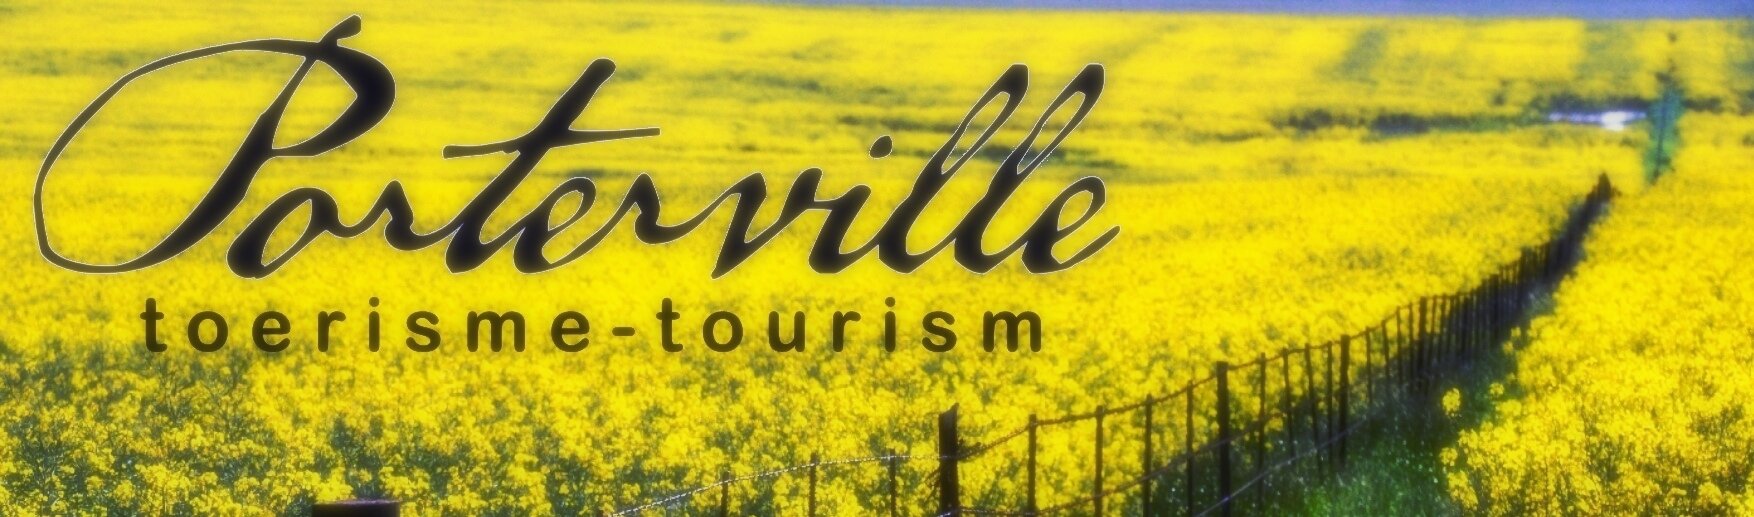 Porterville Tourism